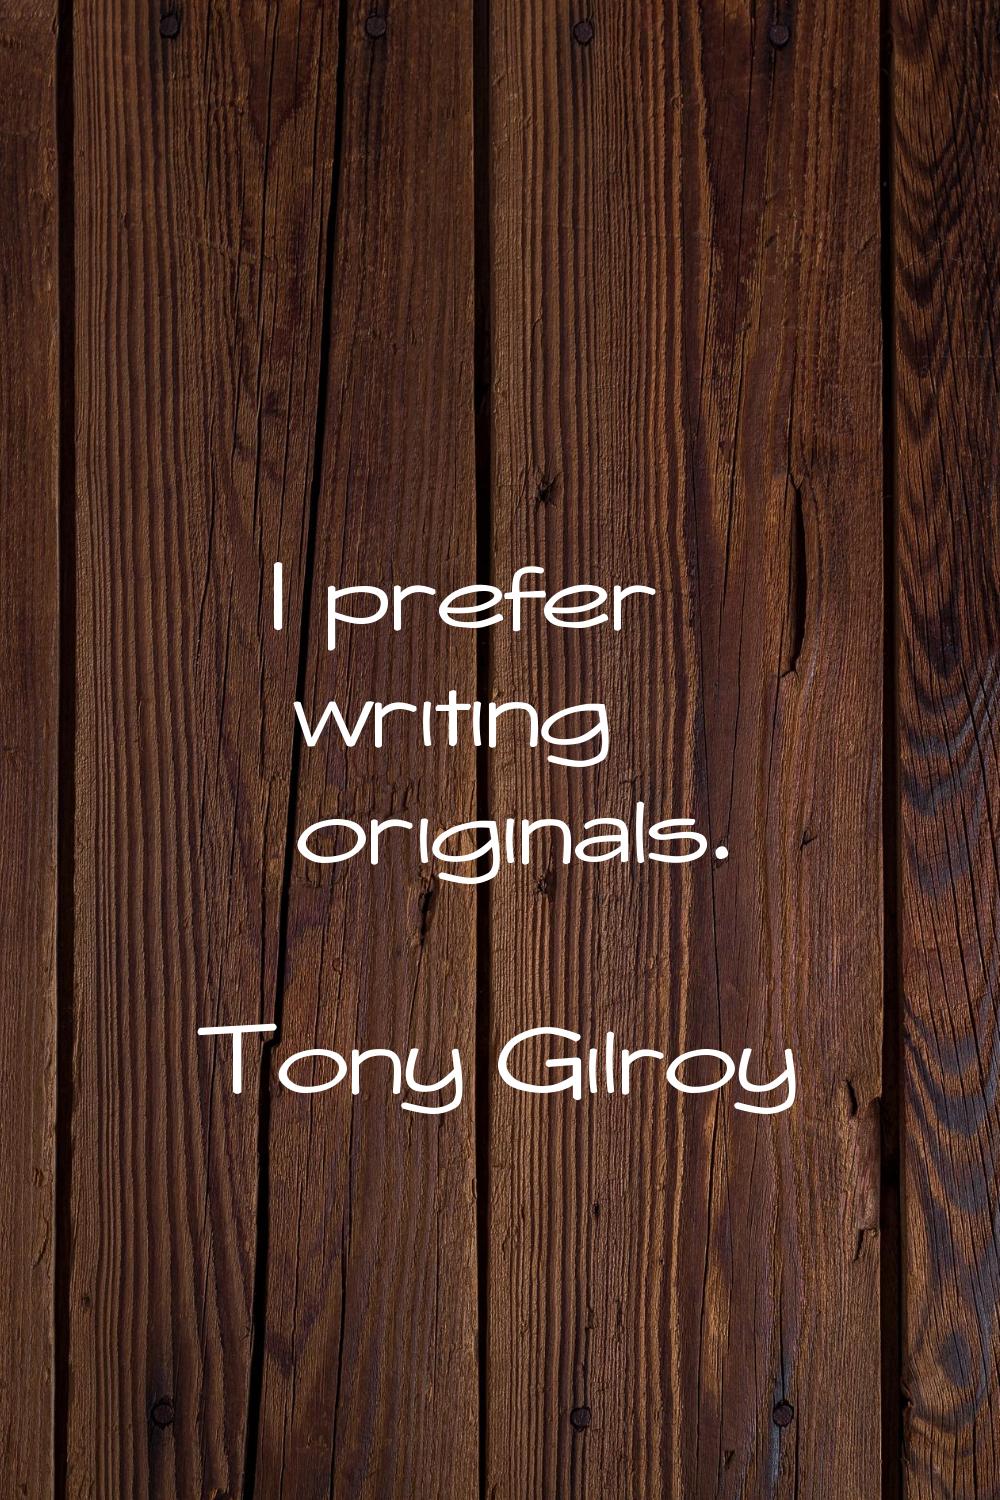 I prefer writing originals.